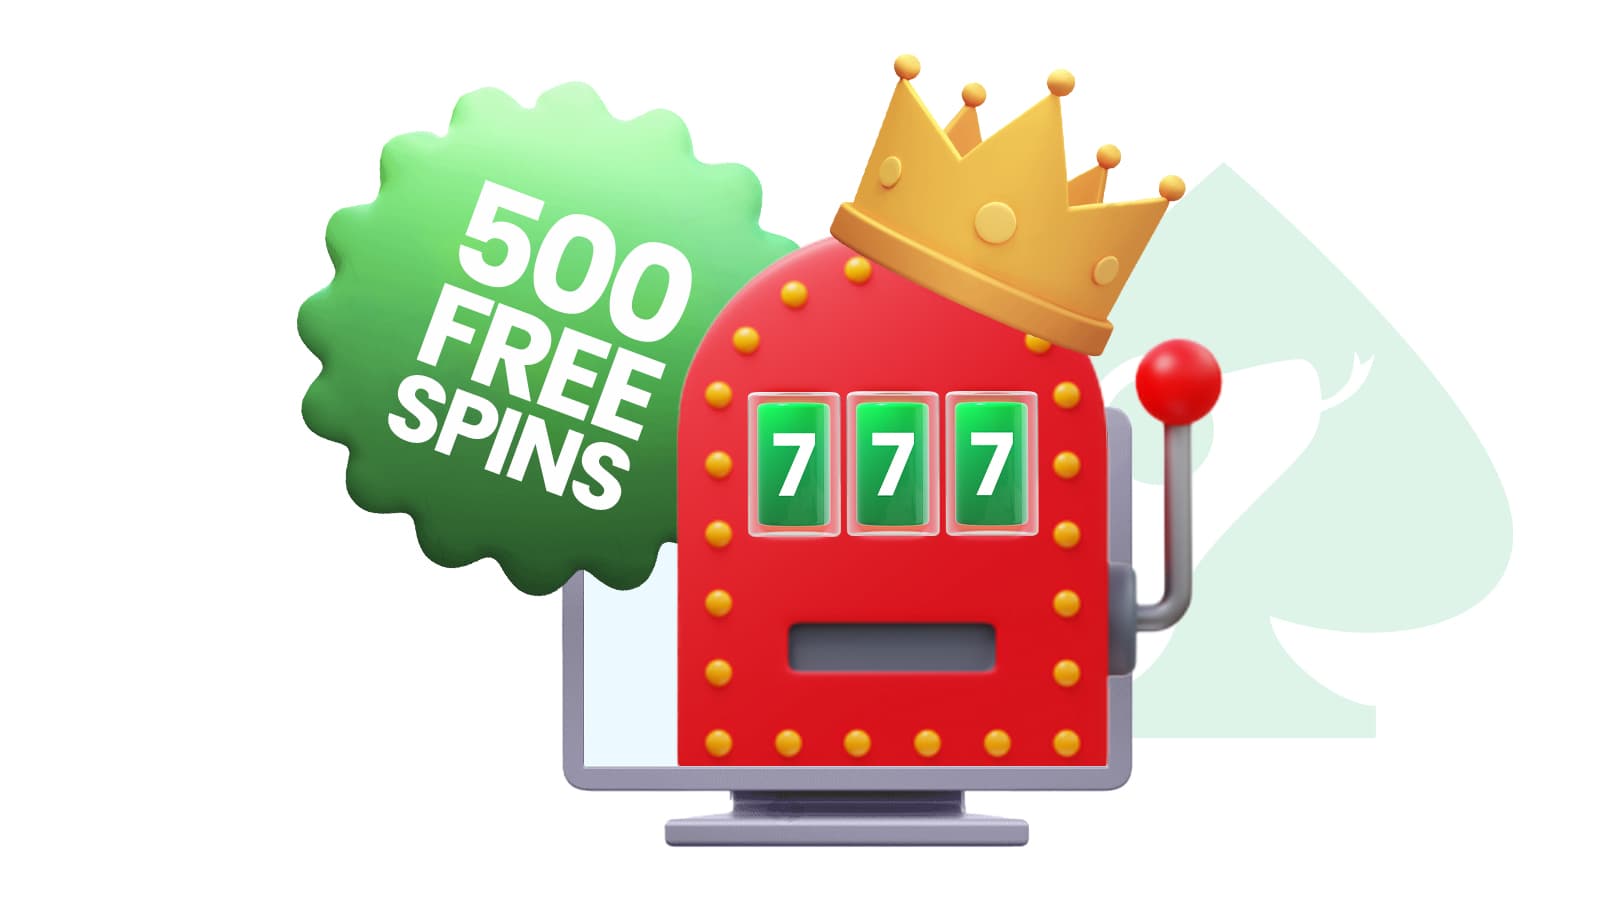 500 free spins online casino